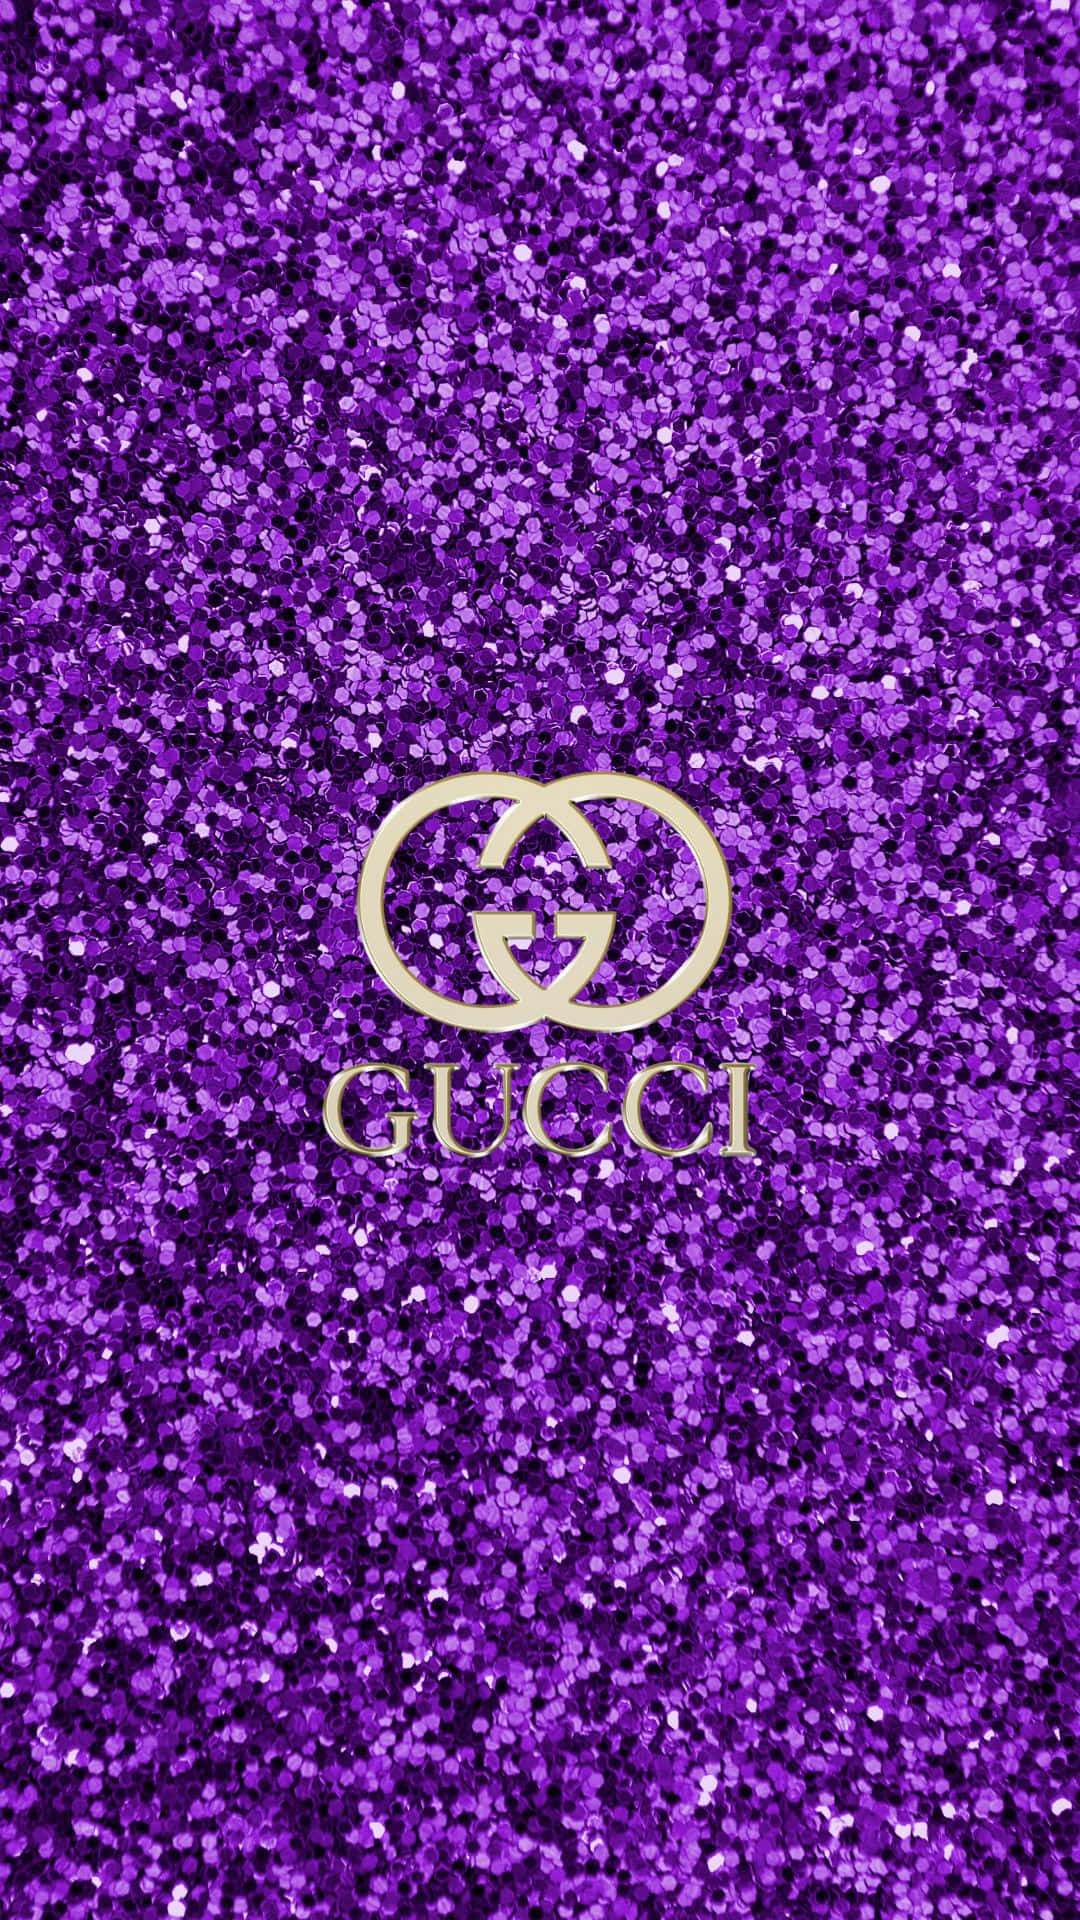 Nyd luksus med lilla Gucci tøj skærm. Wallpaper